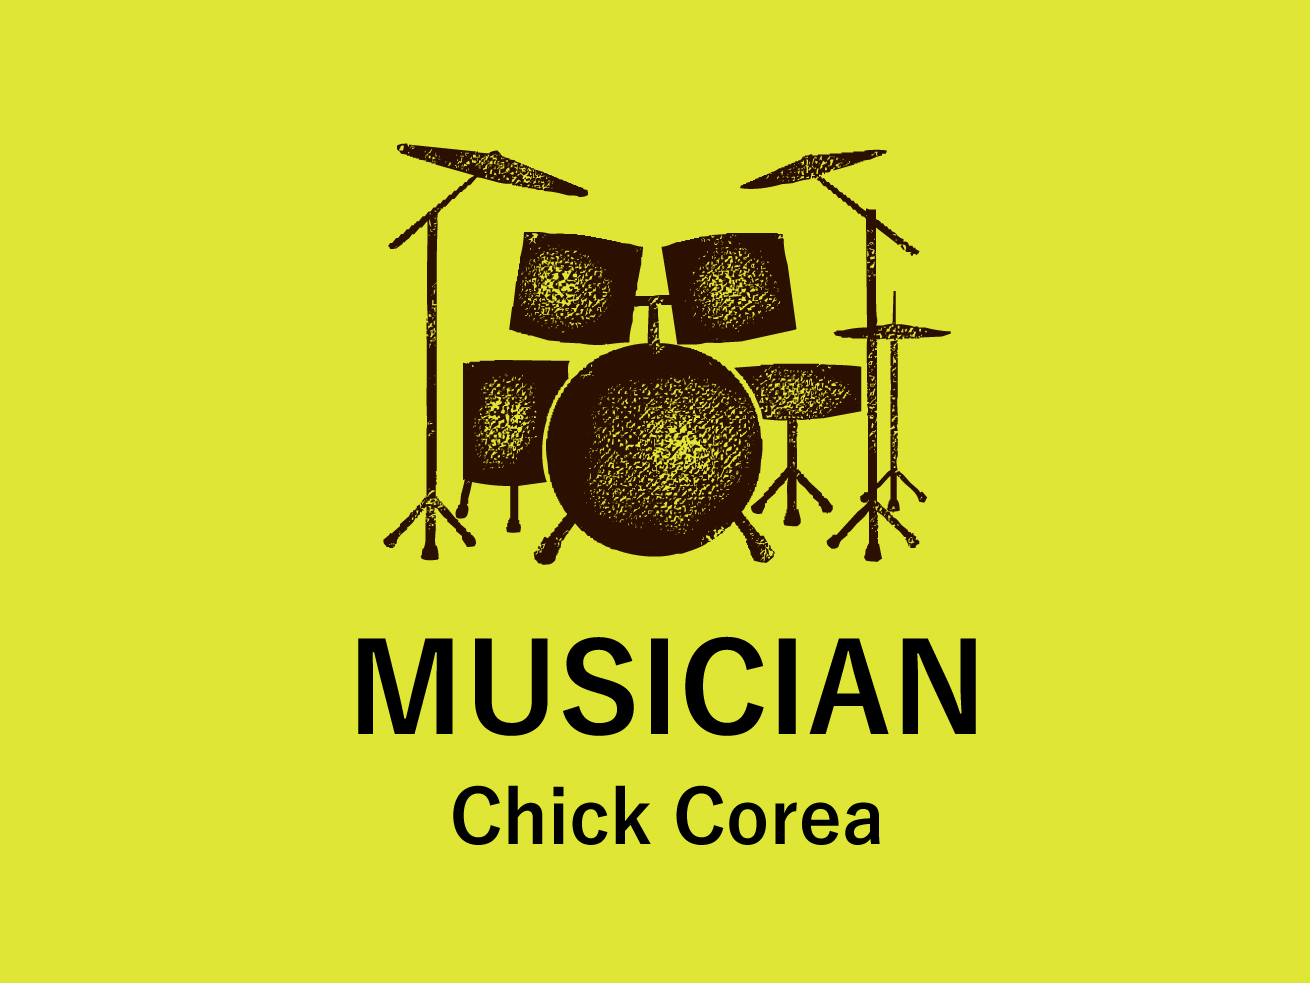 chick corea musician